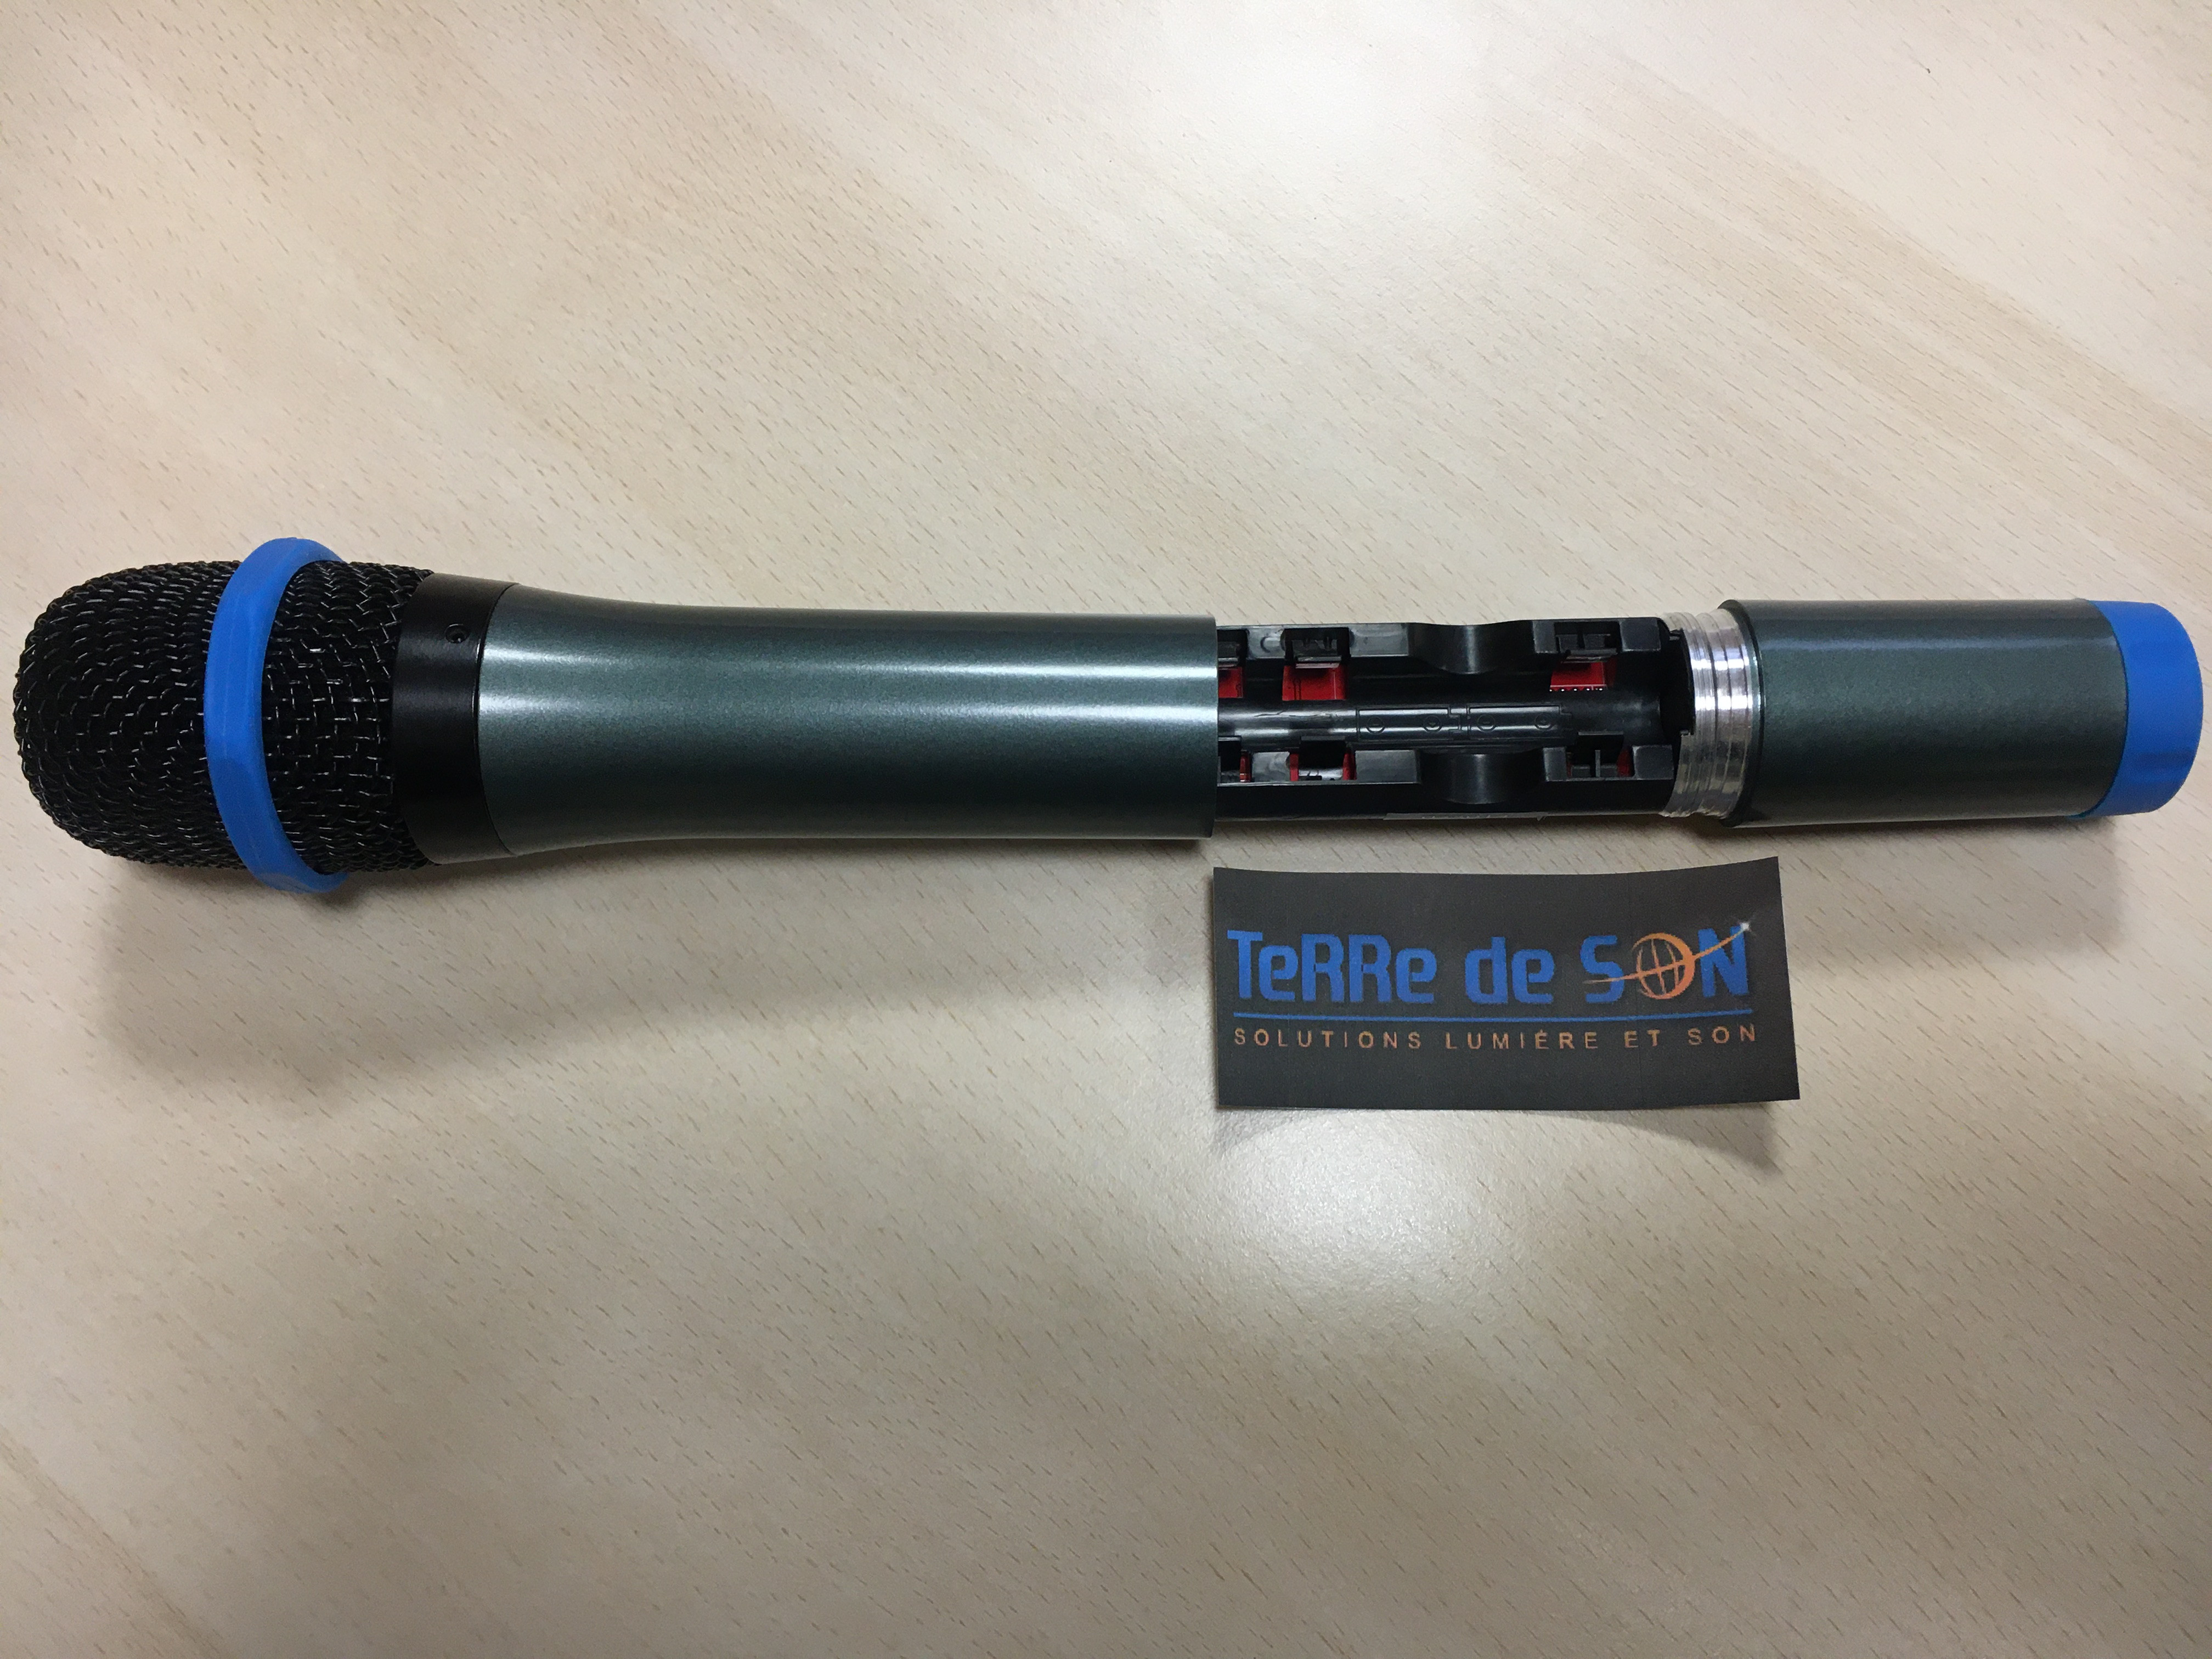 Rondson BE-5018/H83 : ensemble microphone main sans fil